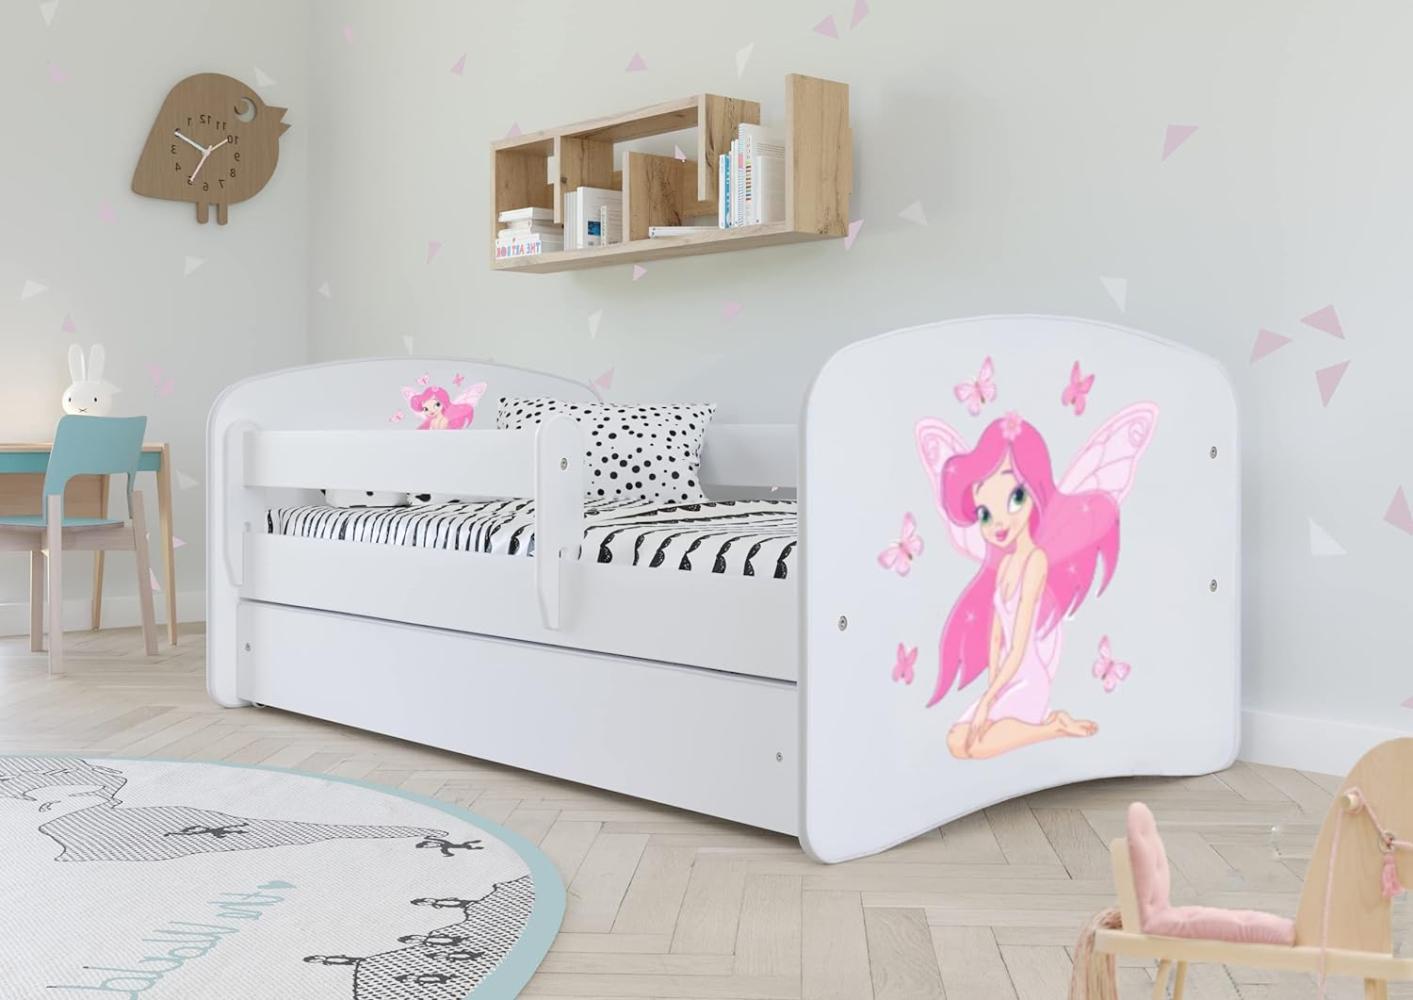 Kocot Kids 'Fee mit Schmetterlingen' Einzelbett weiß 90x180 cm inkl. Rausfallschutz, Matratze, Schublade und Lattenrost Bild 1